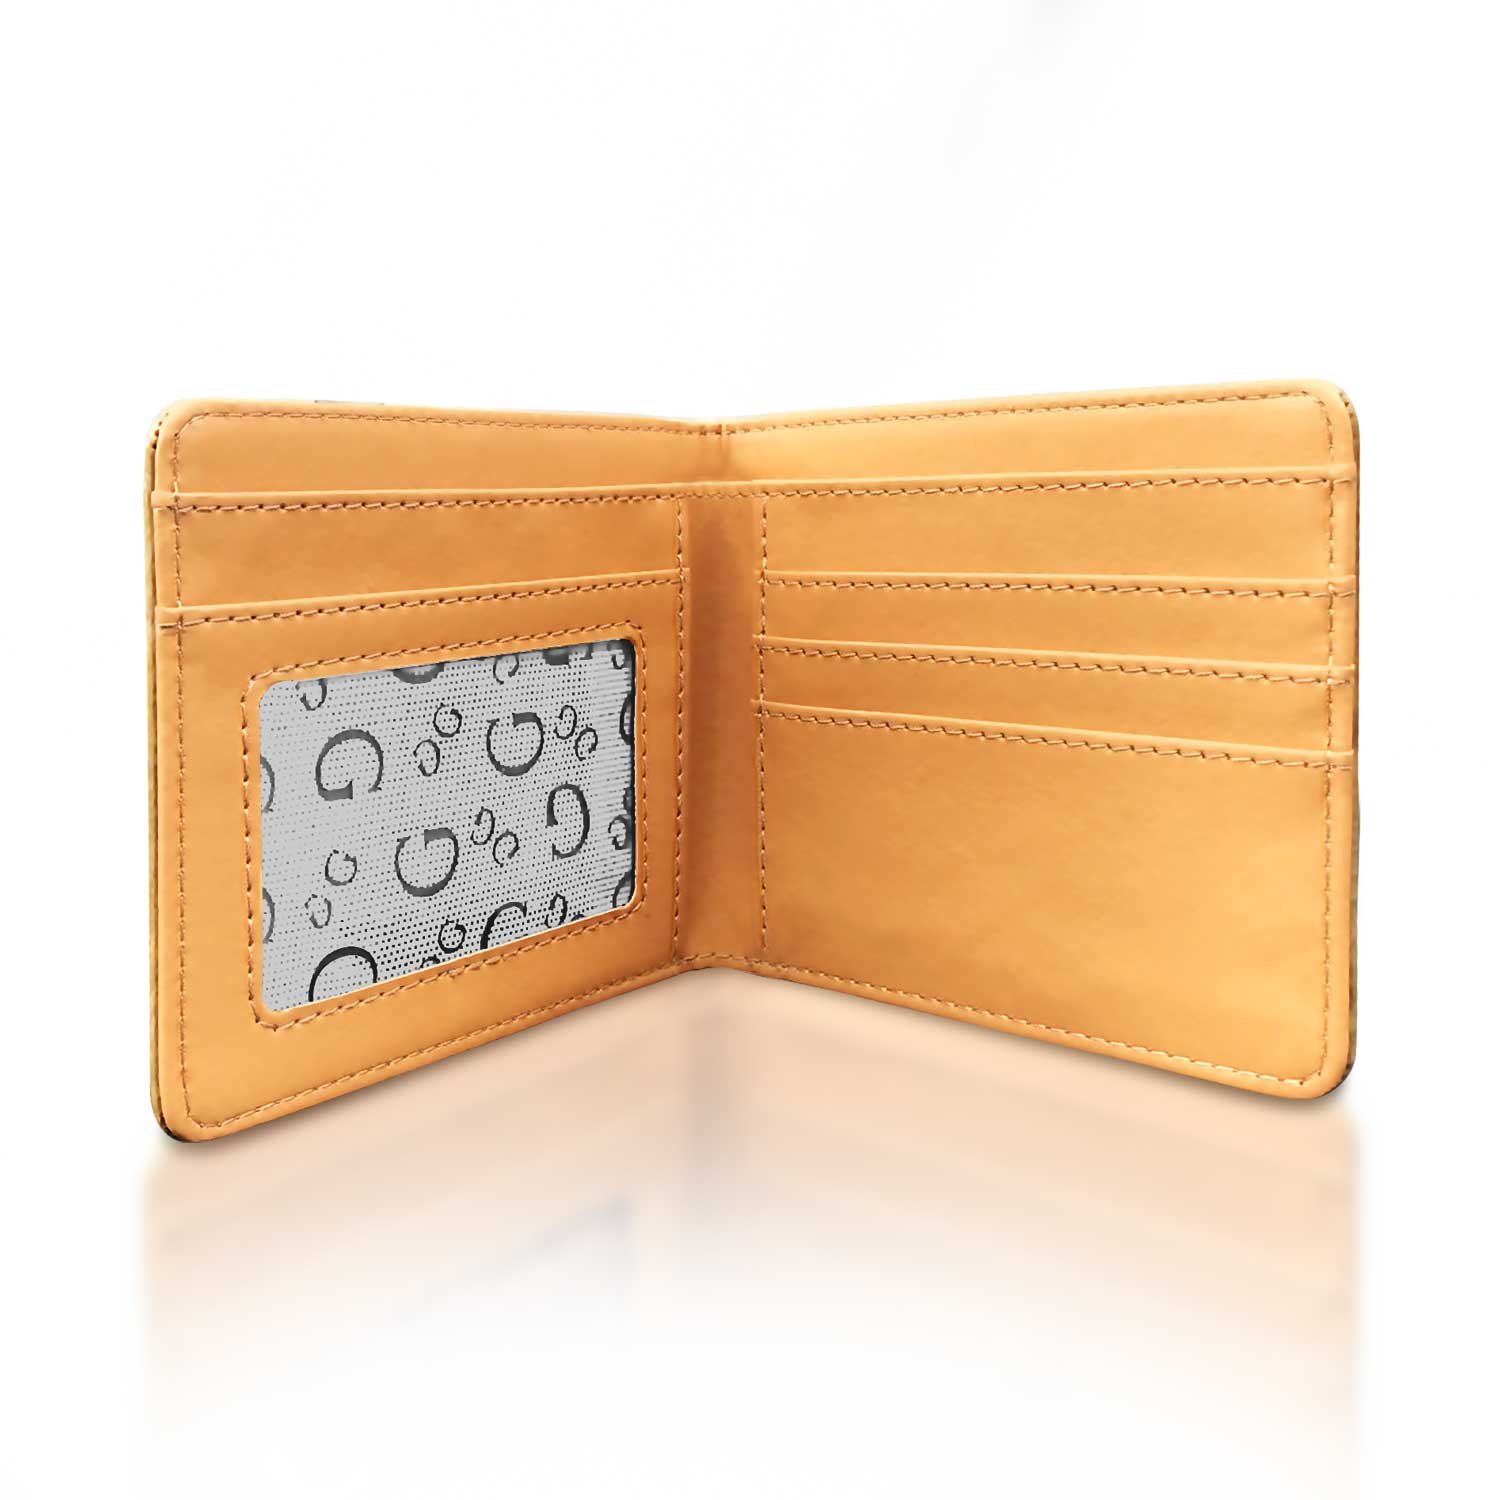 The S Pentagram wallet